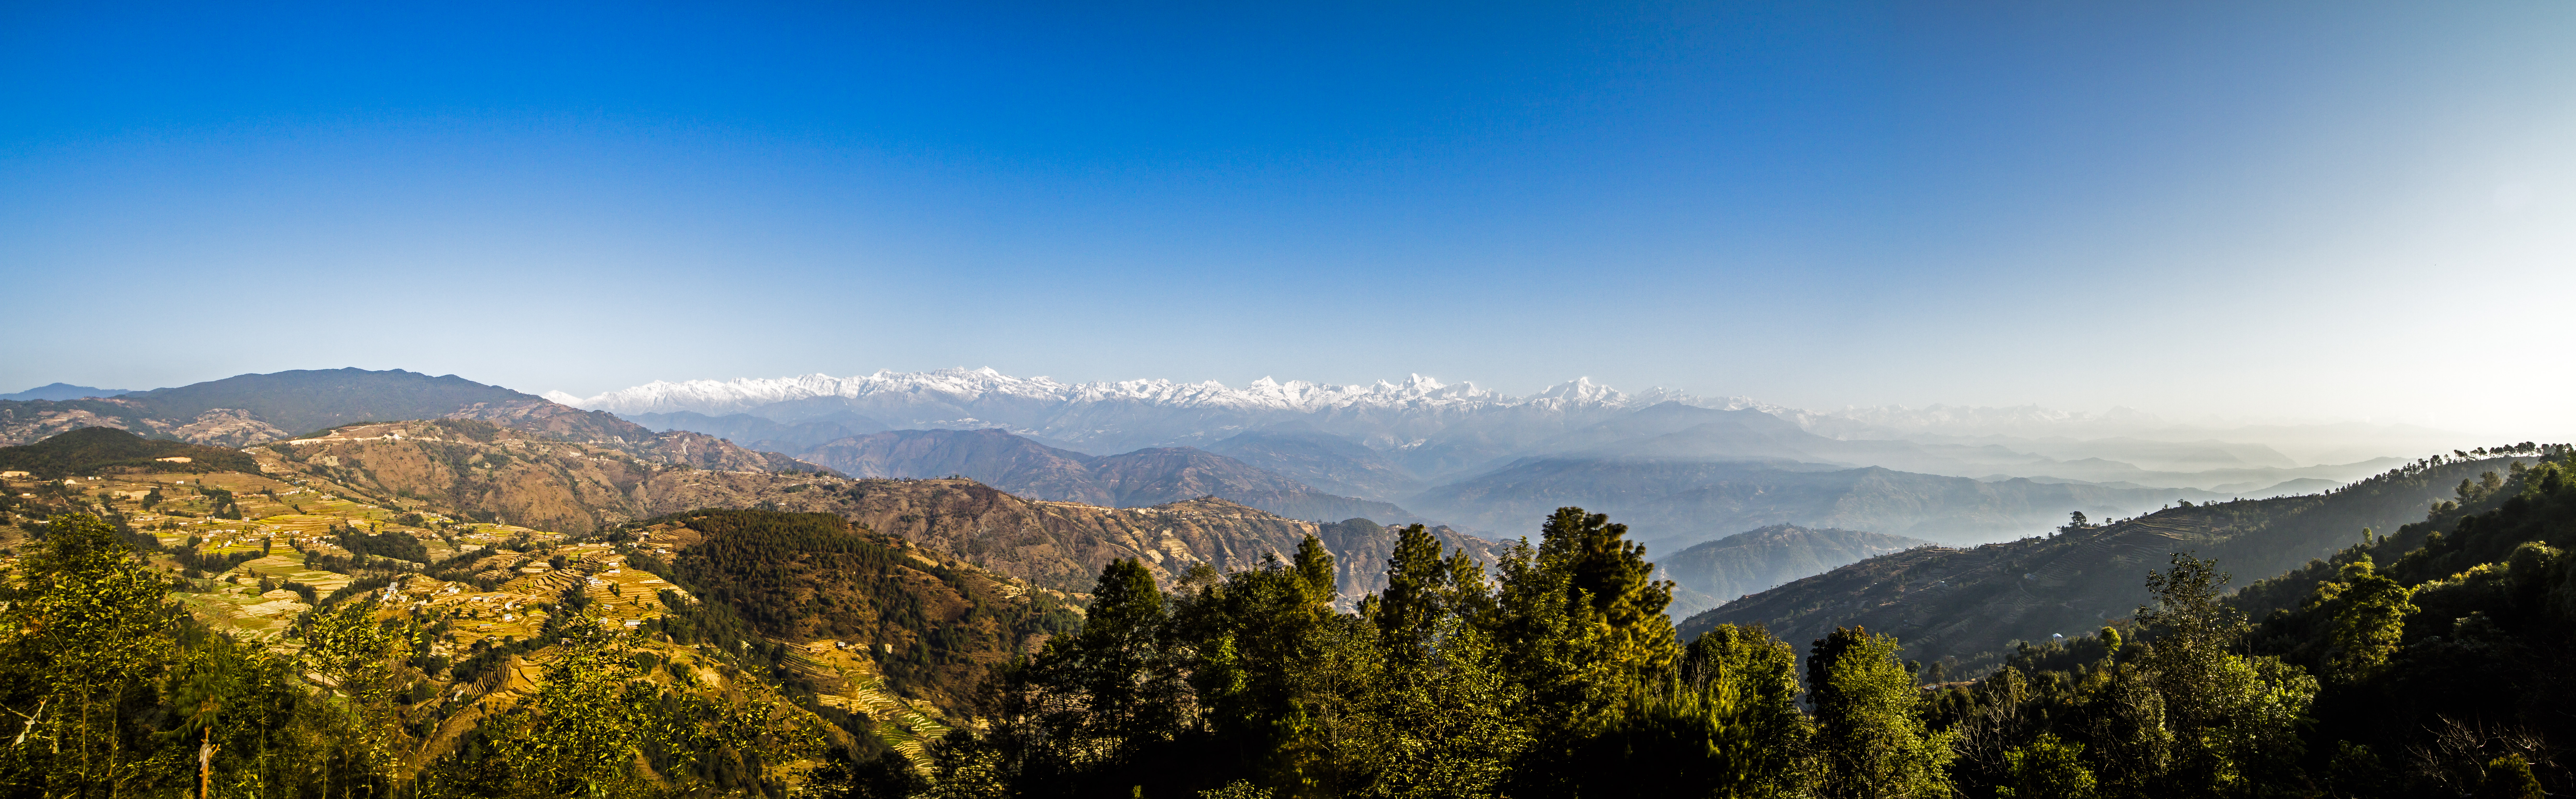 /Guewen/galeries/public/Voyages/panorama/hymalaya/Himalaya-pano_04.jpg